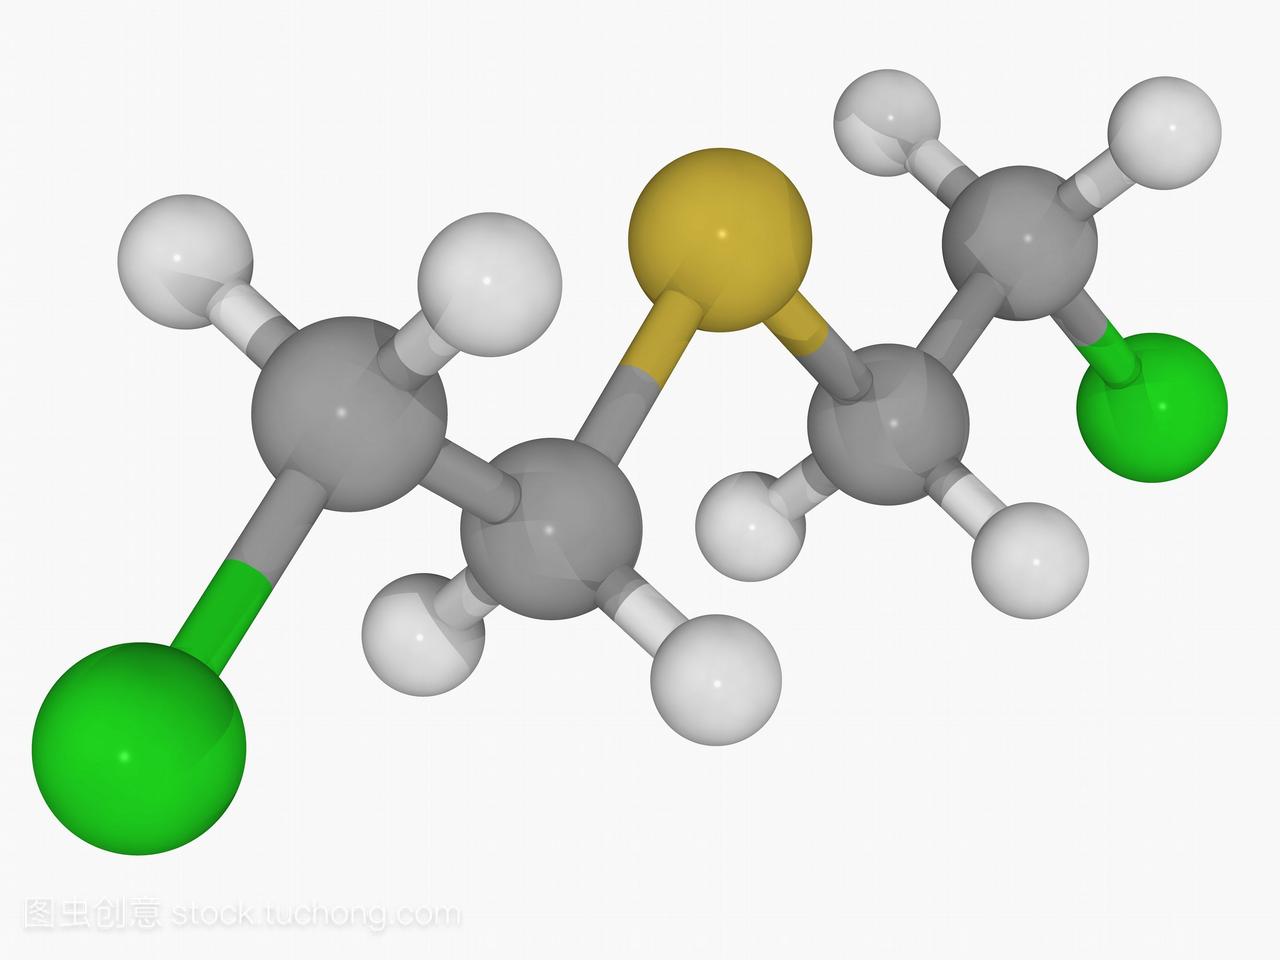 芥子气分子模型。化学战剂在暴露的皮肤和肺里